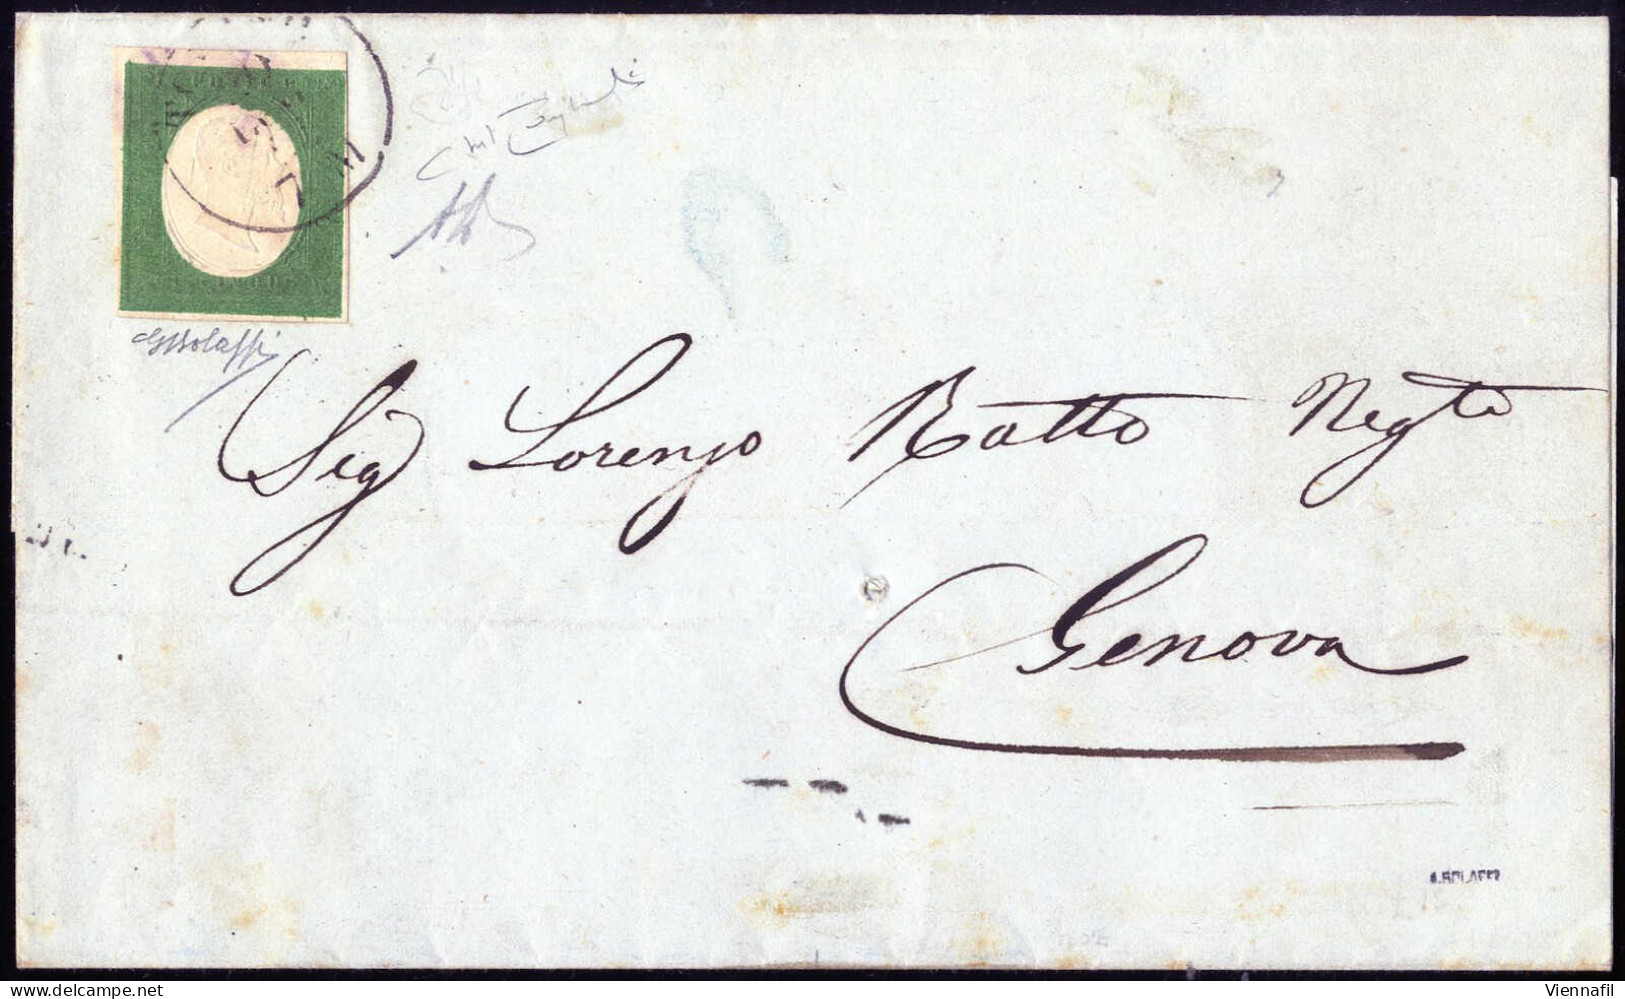 Cover 1855, Circolare Da Torino Il 19.7 Per Genova Affrancata Con 5 C. Verde Azzurro Isolato, Firmata AD E Bolaffi, Cert - Sardaigne